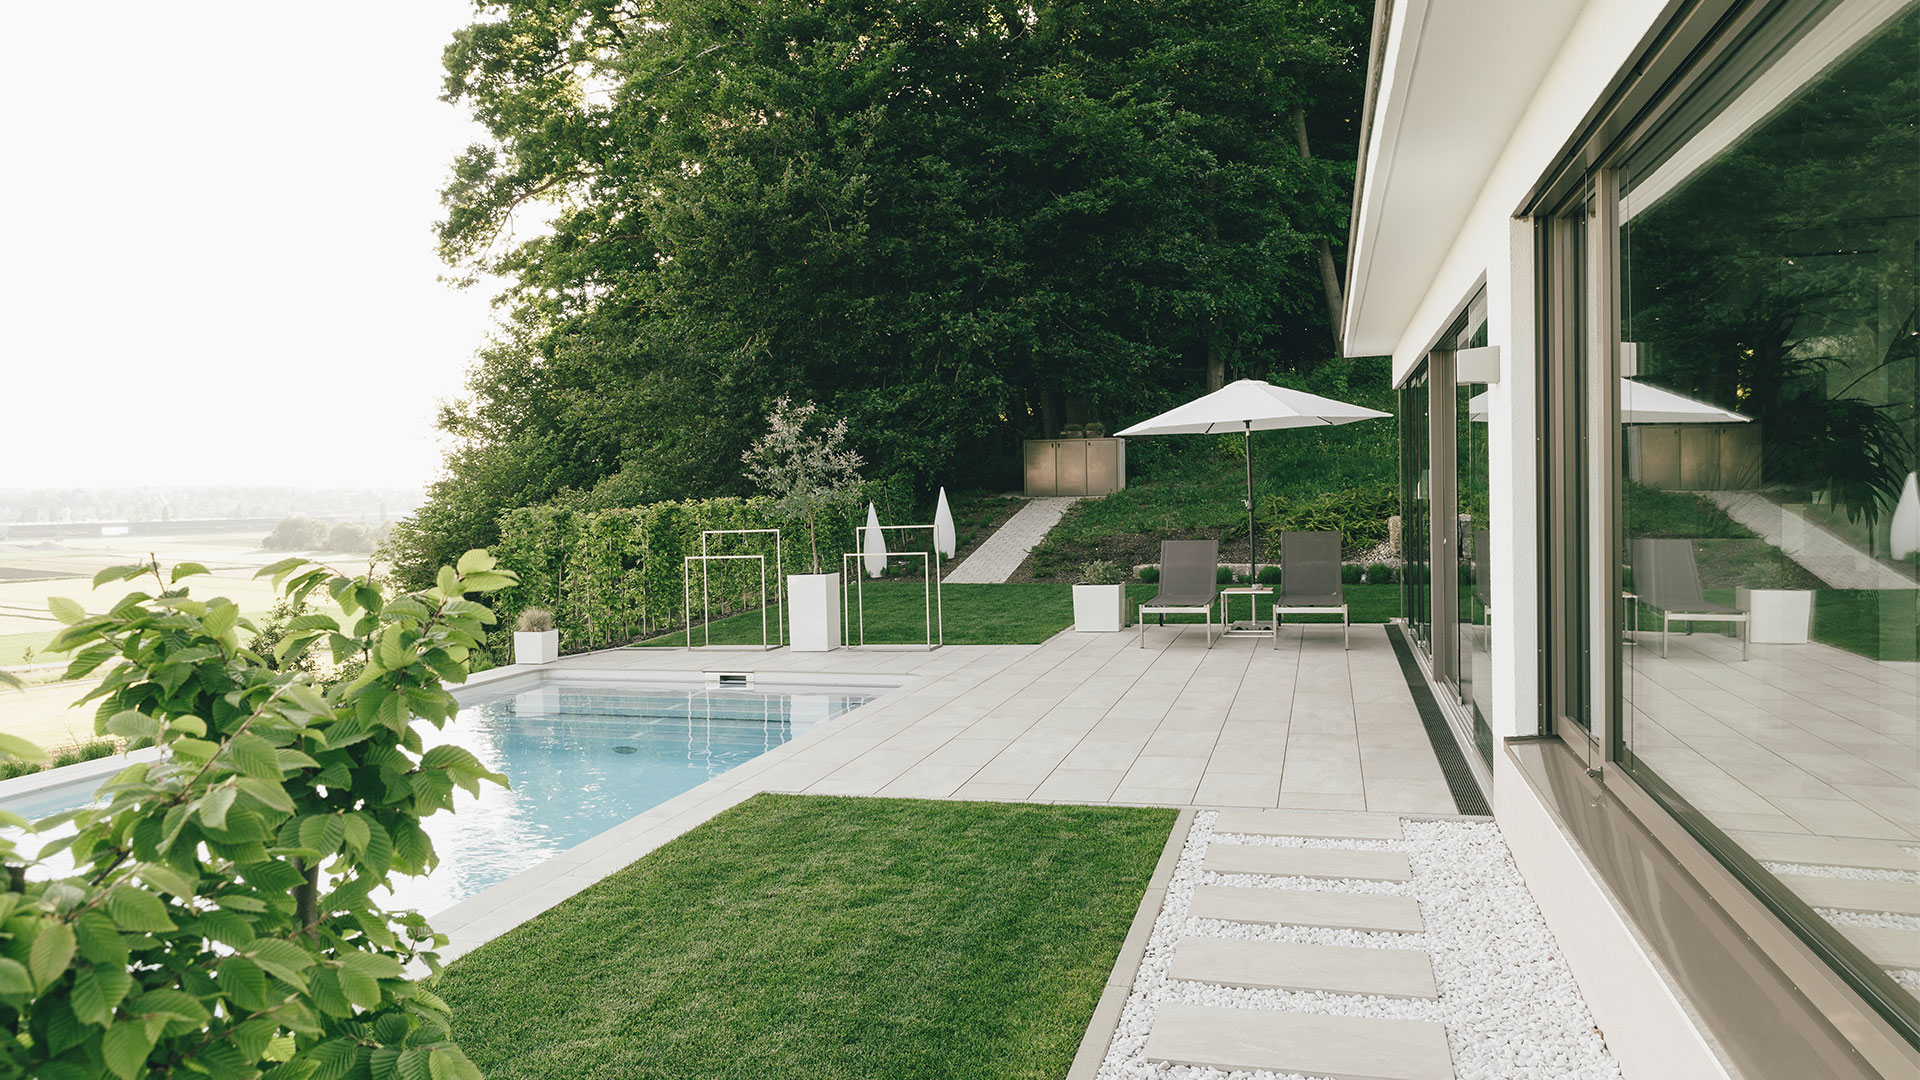 Terrasse mit Pool sowie individuelles Gartenkonzept